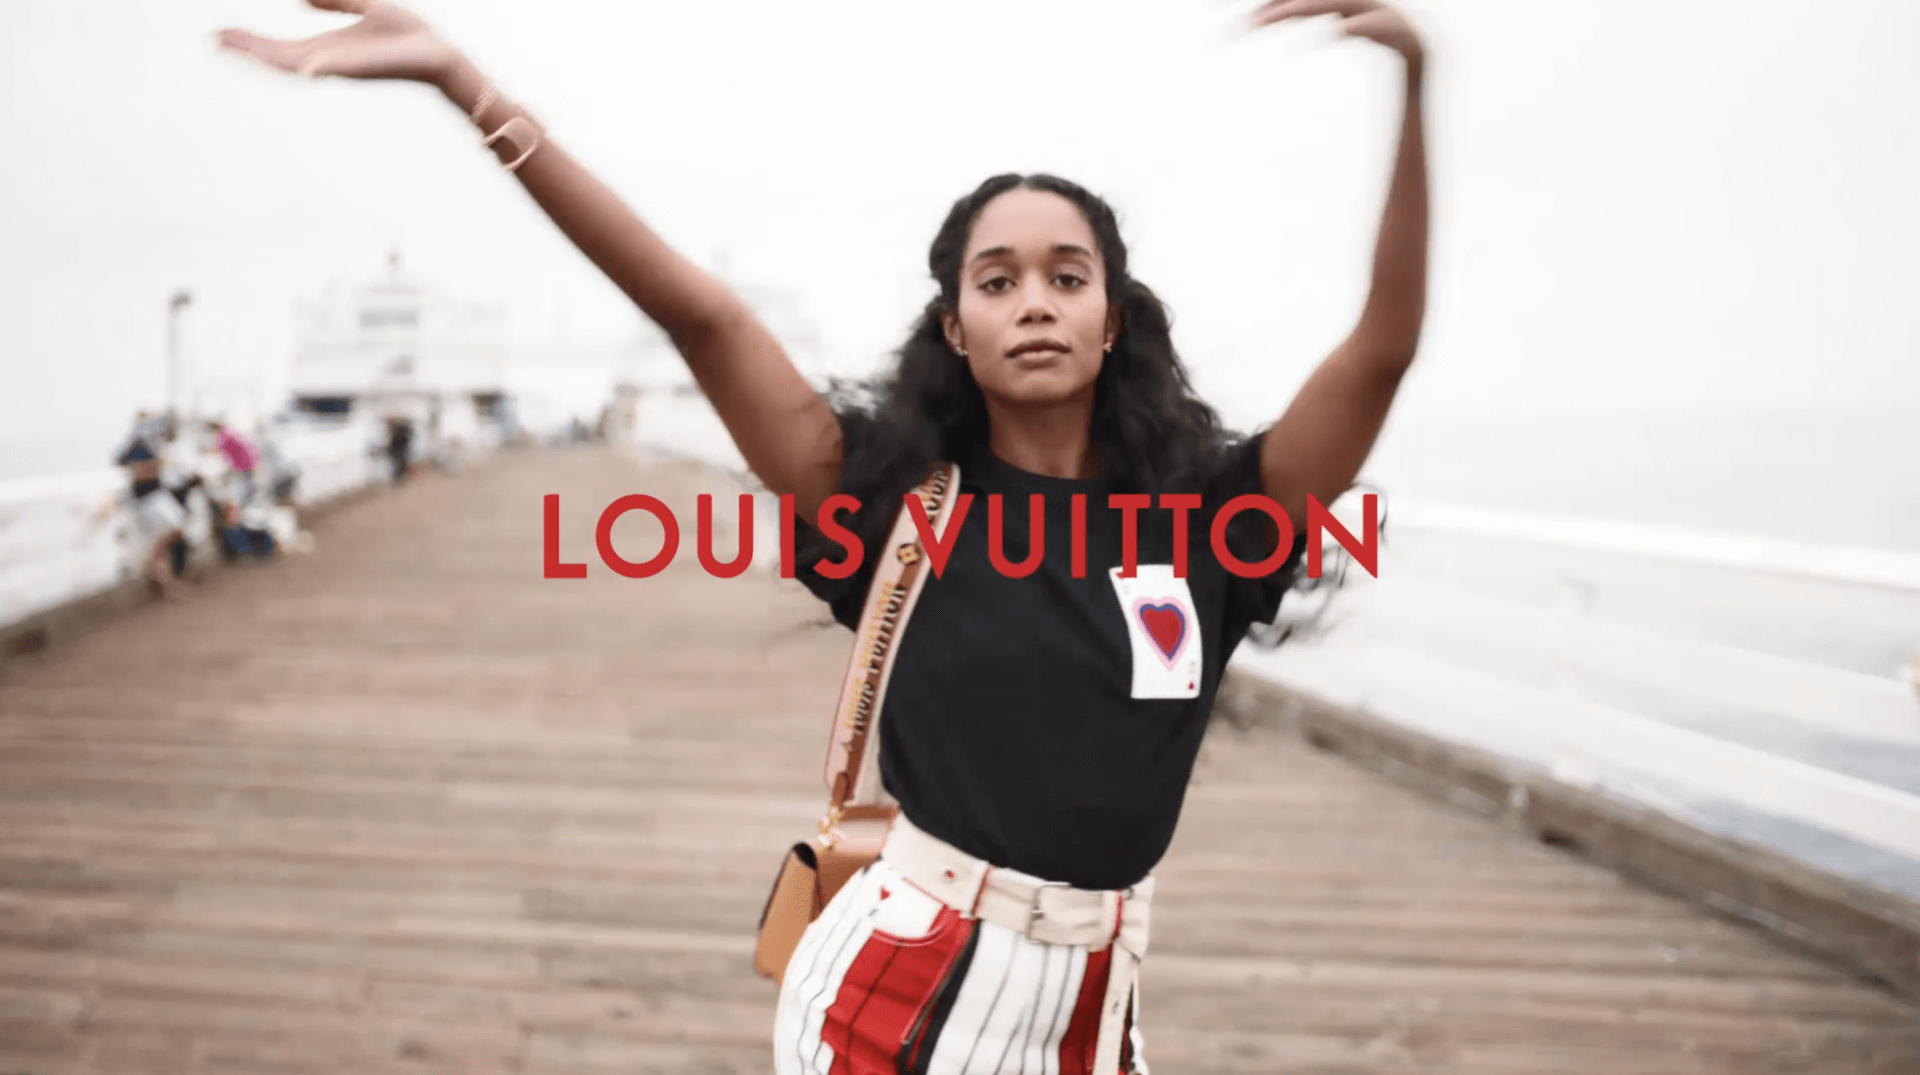 Liu Yifei Louis Vuitton Capucines Bag Campaign